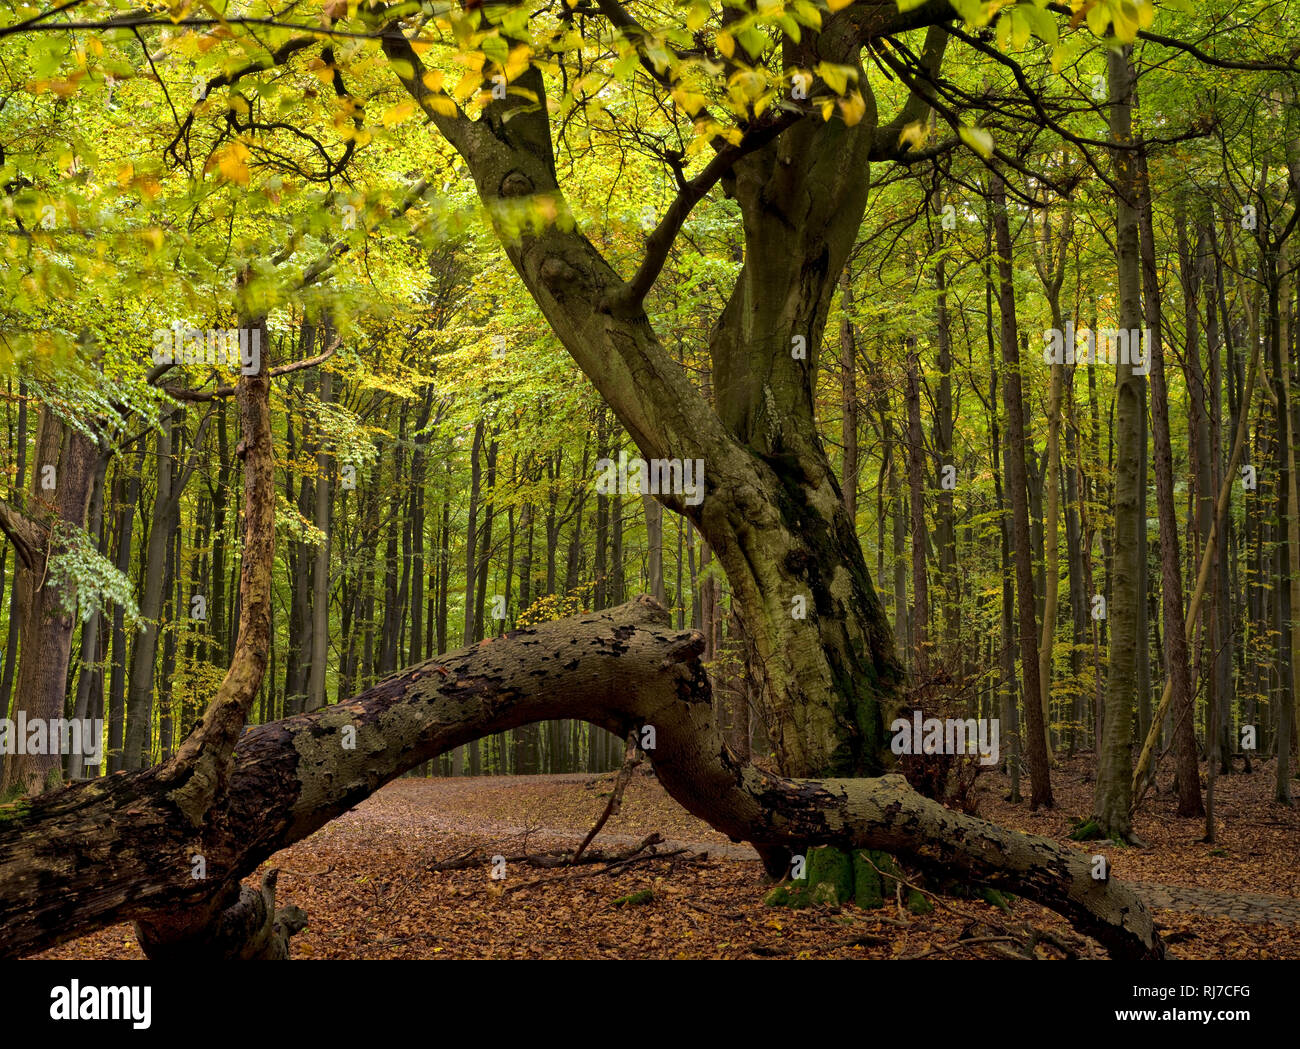 Europa, Deutschland, Mecklenburg-Vorpommern, Insel Rügen, Nationalpark Jasmund, UNESCO-Weltnaturerbe Europäische Buchenwälder, alte Rotbuche in den Le Stock Photo